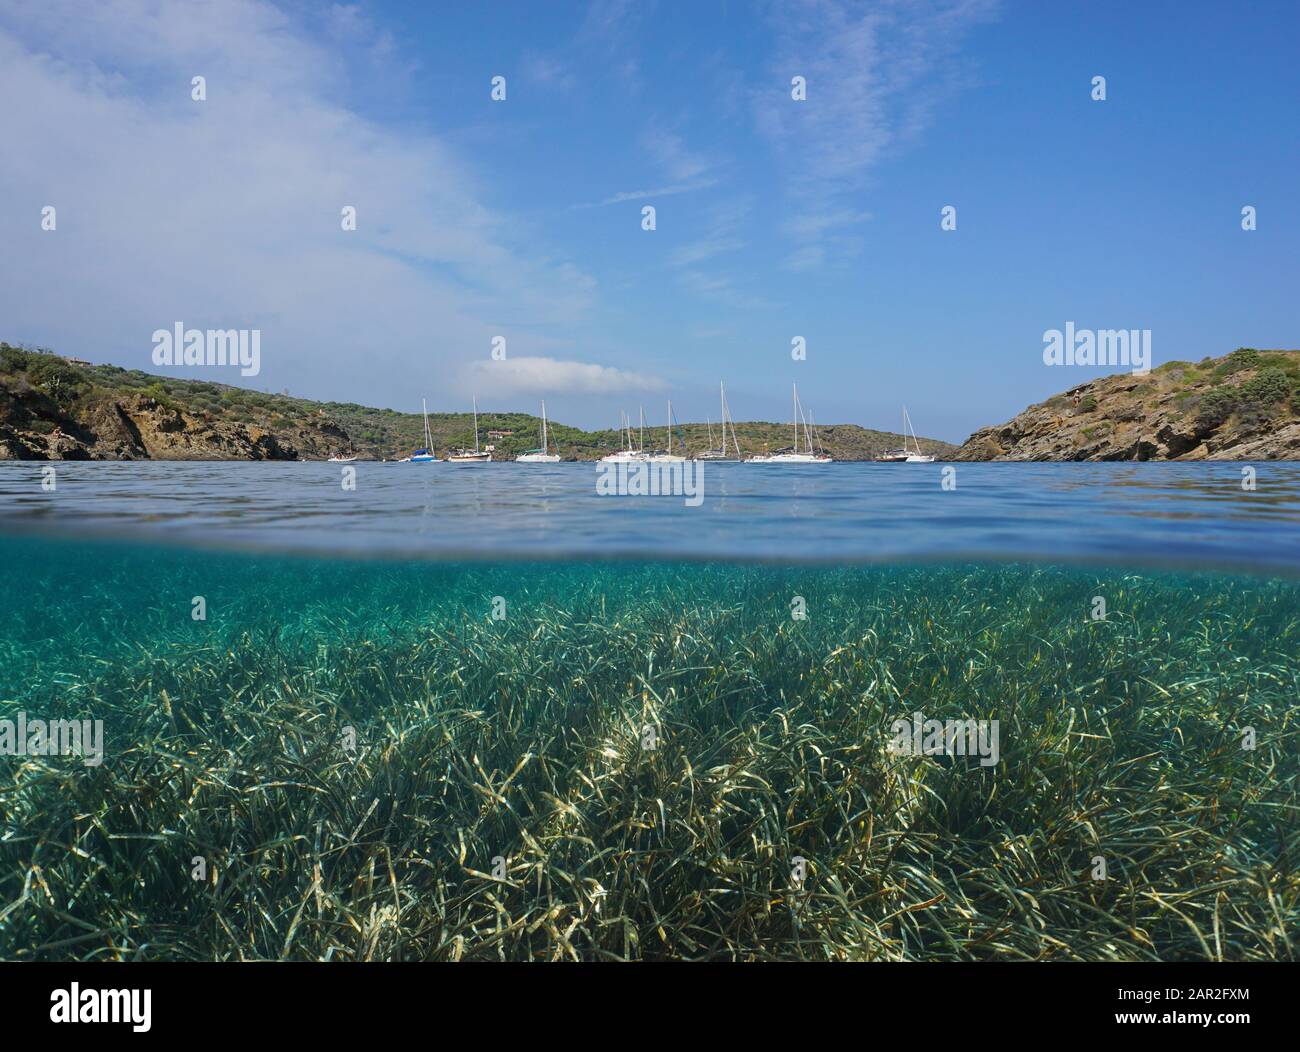 Litorale mediterraneo con barche a vela ormeggiate in una baia e mare sott'acqua, vista su e sotto superficie d'acqua, Spagna, Costa Brava Foto Stock